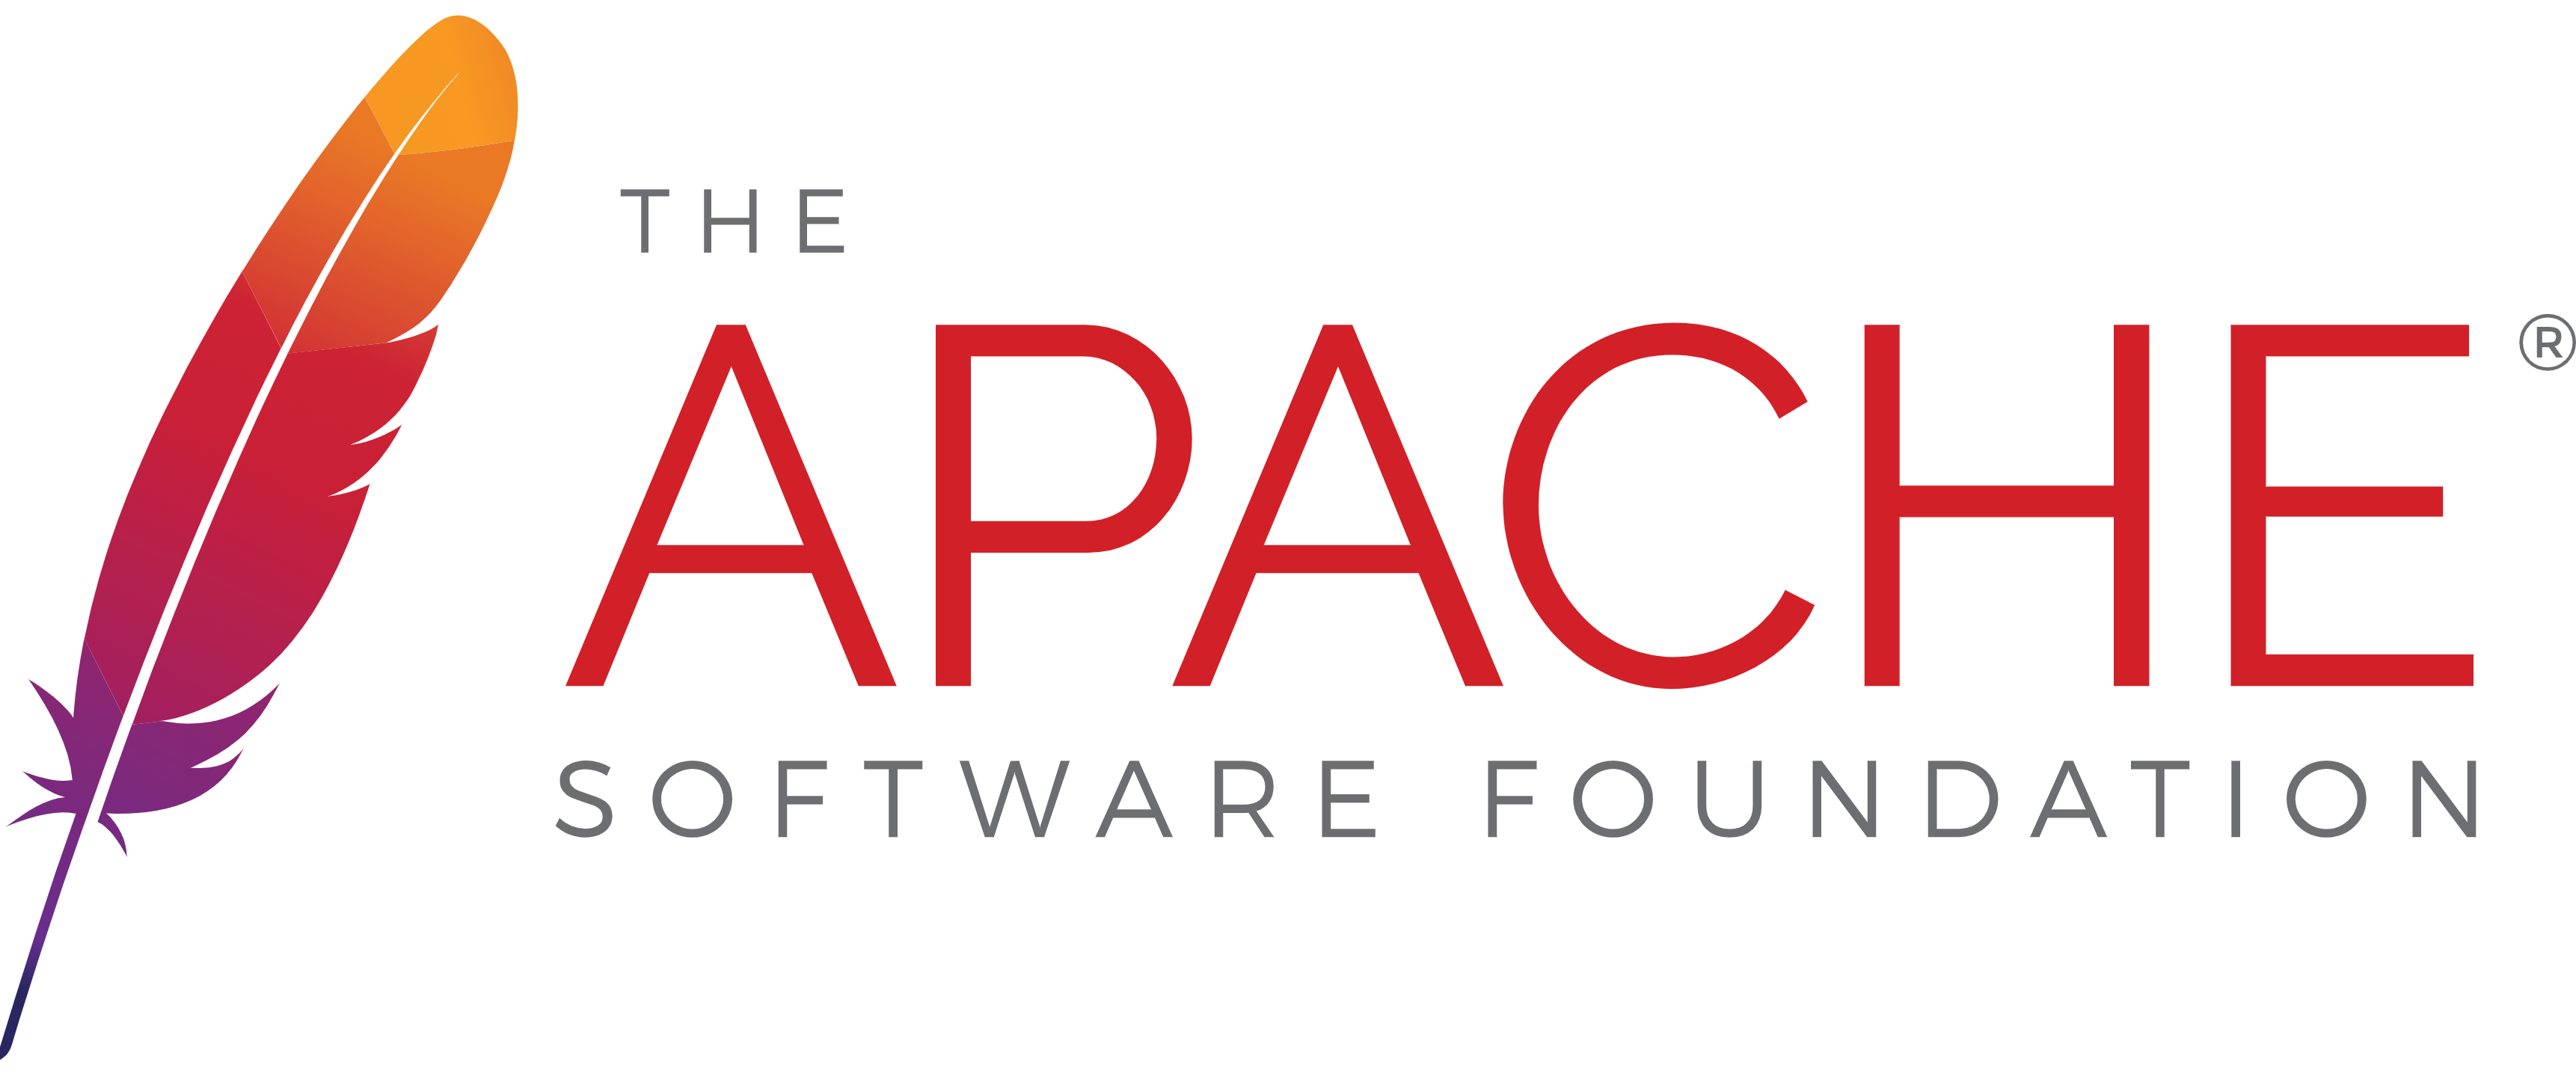 Apache-Webserver-Dokument ansehen